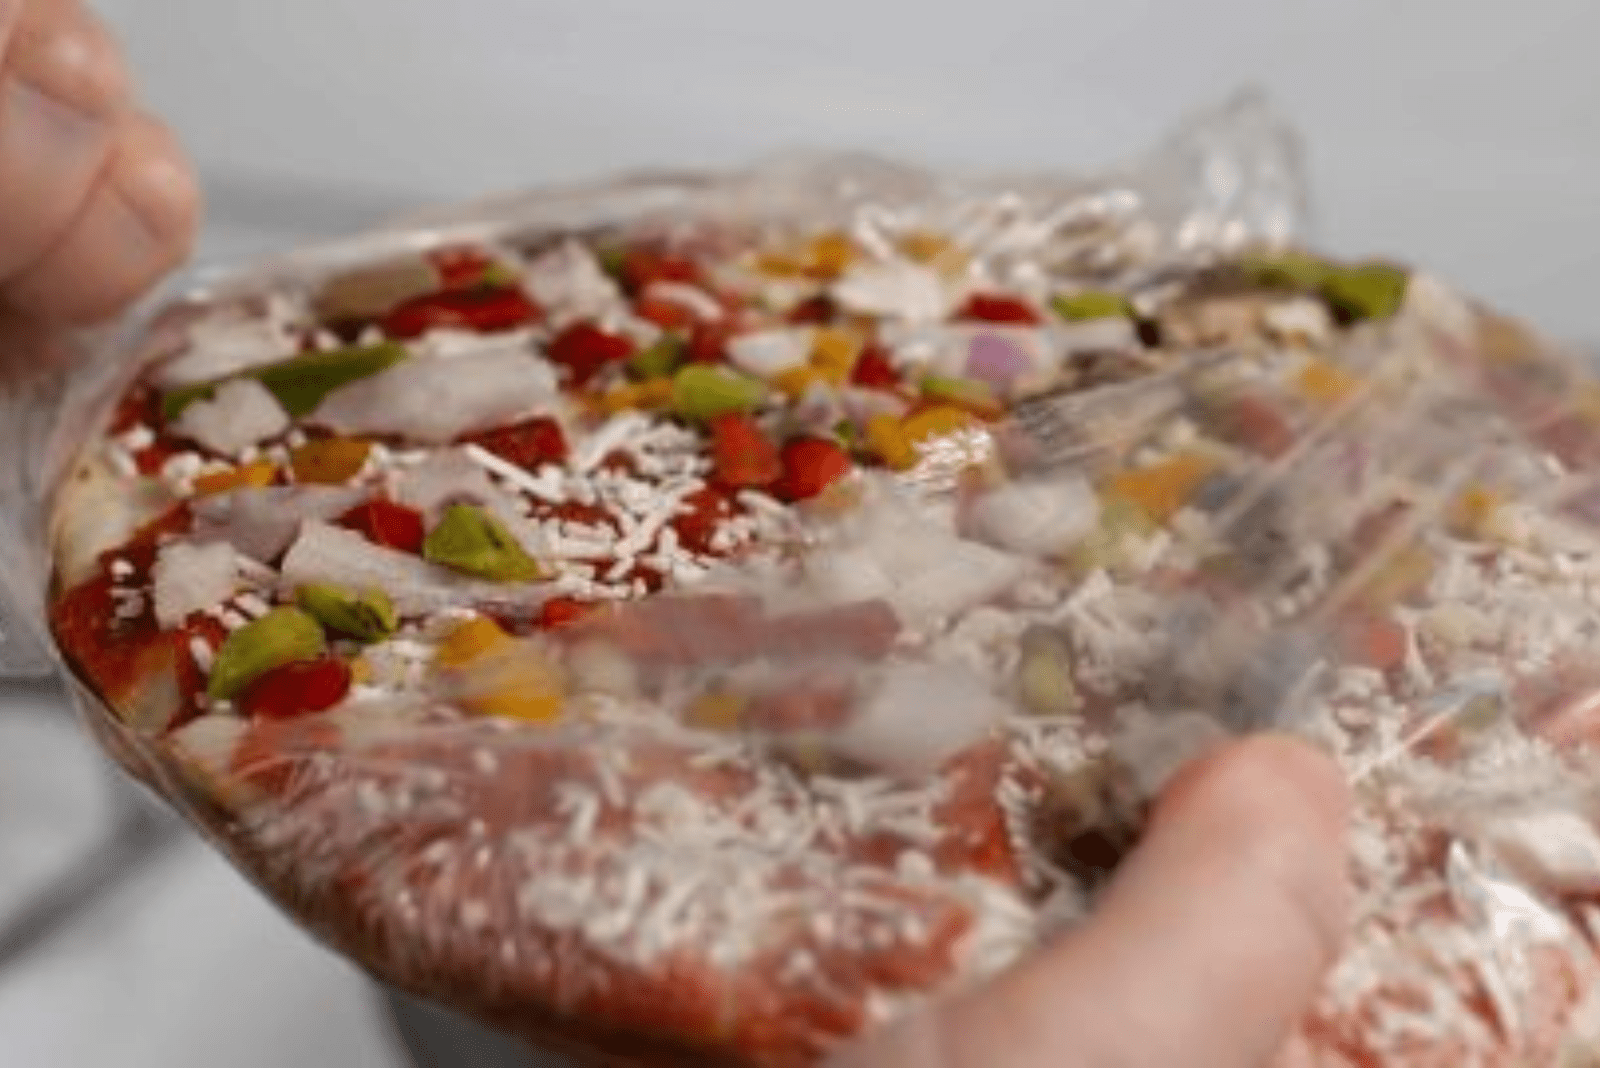 a woman unwraps a frozen pizza